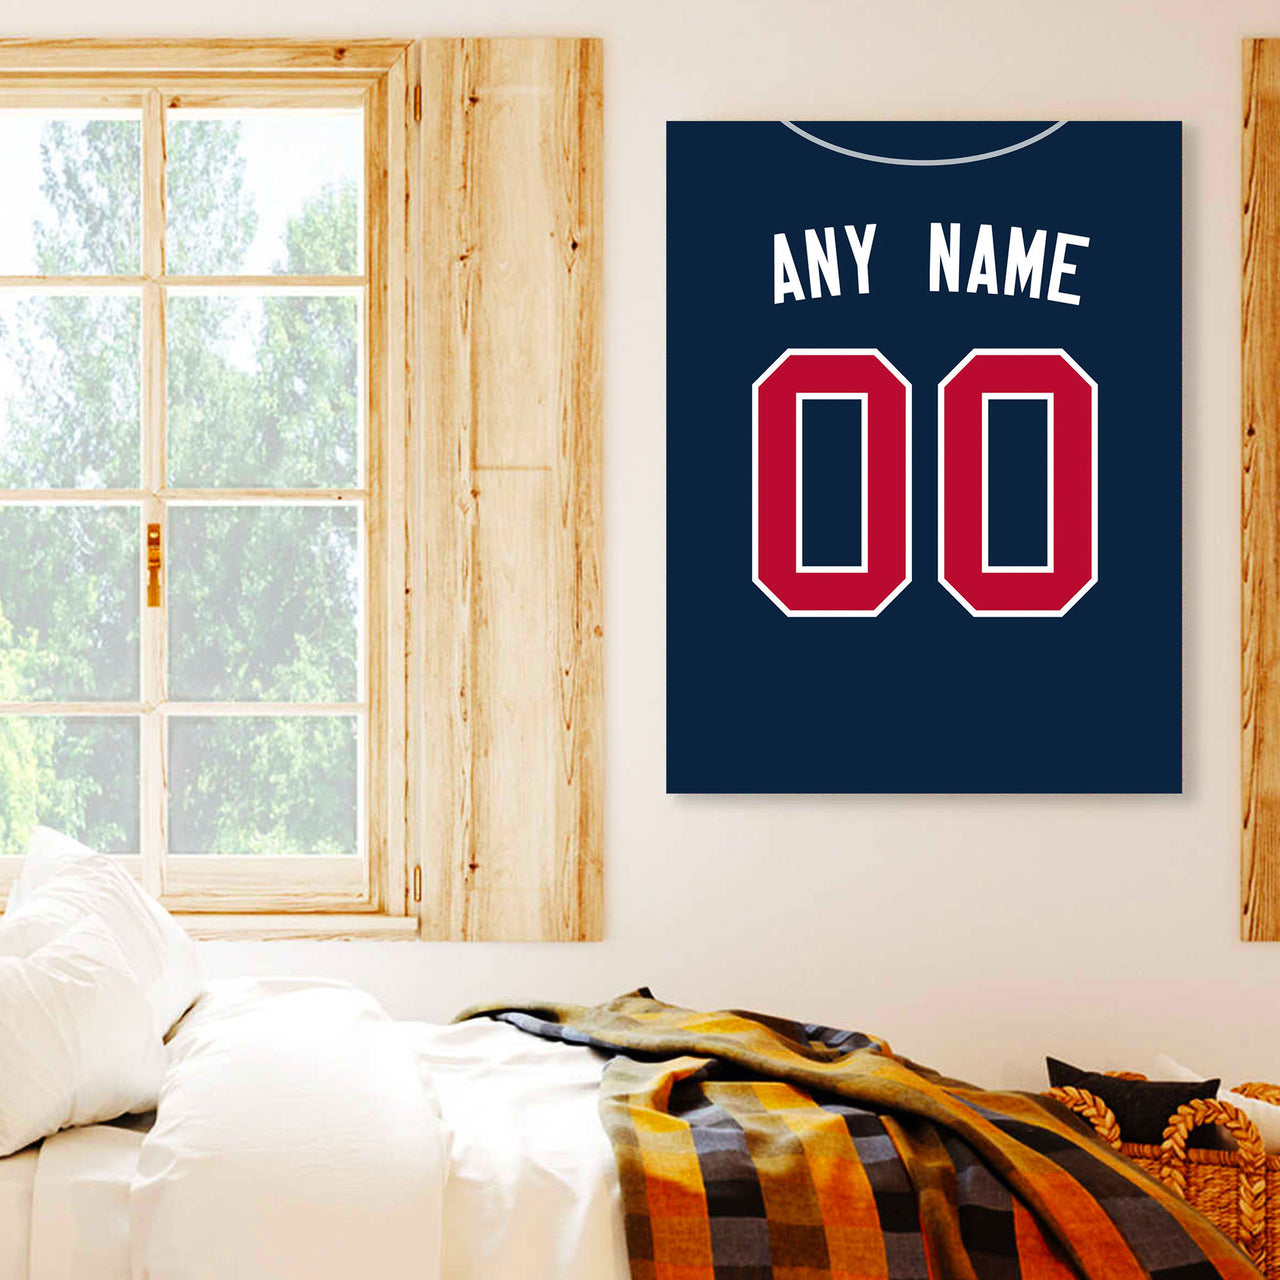 Atlanta Braves Custom Name & Number Baseball Shirt Best Gift For